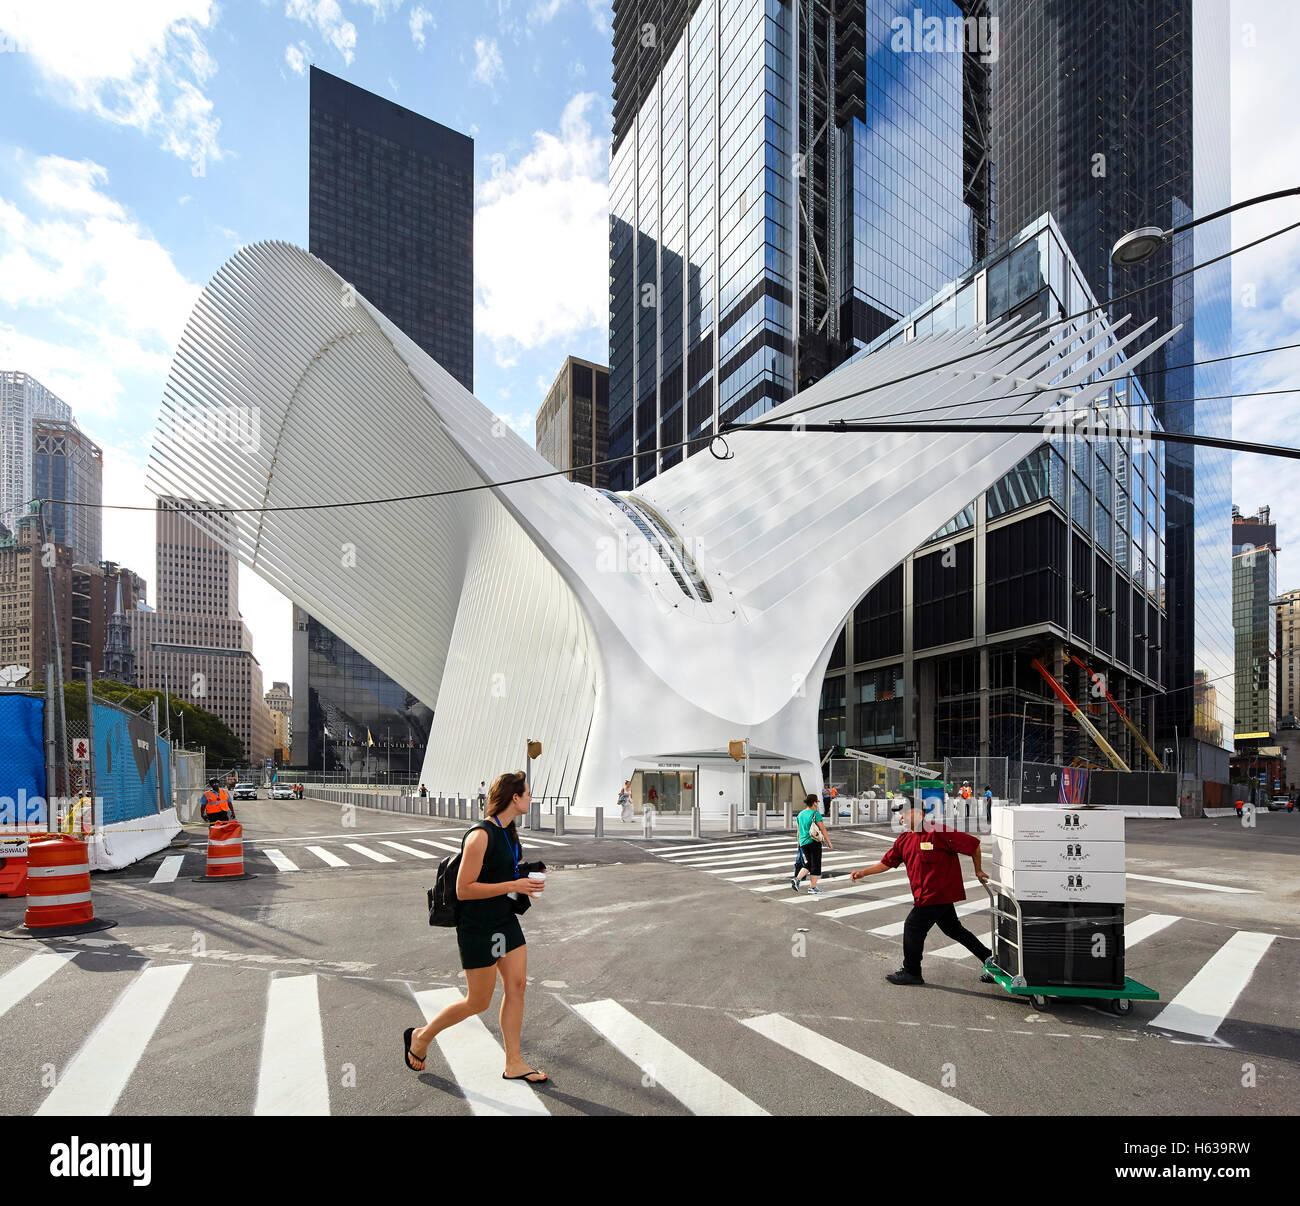 Passage piéton rue avec entrée de plaque tournante du transport. L'Oculus, World Trade Center Transportation Hub, New York, United States. Architecte : Santiago Calatrava, 2016. Banque D'Images